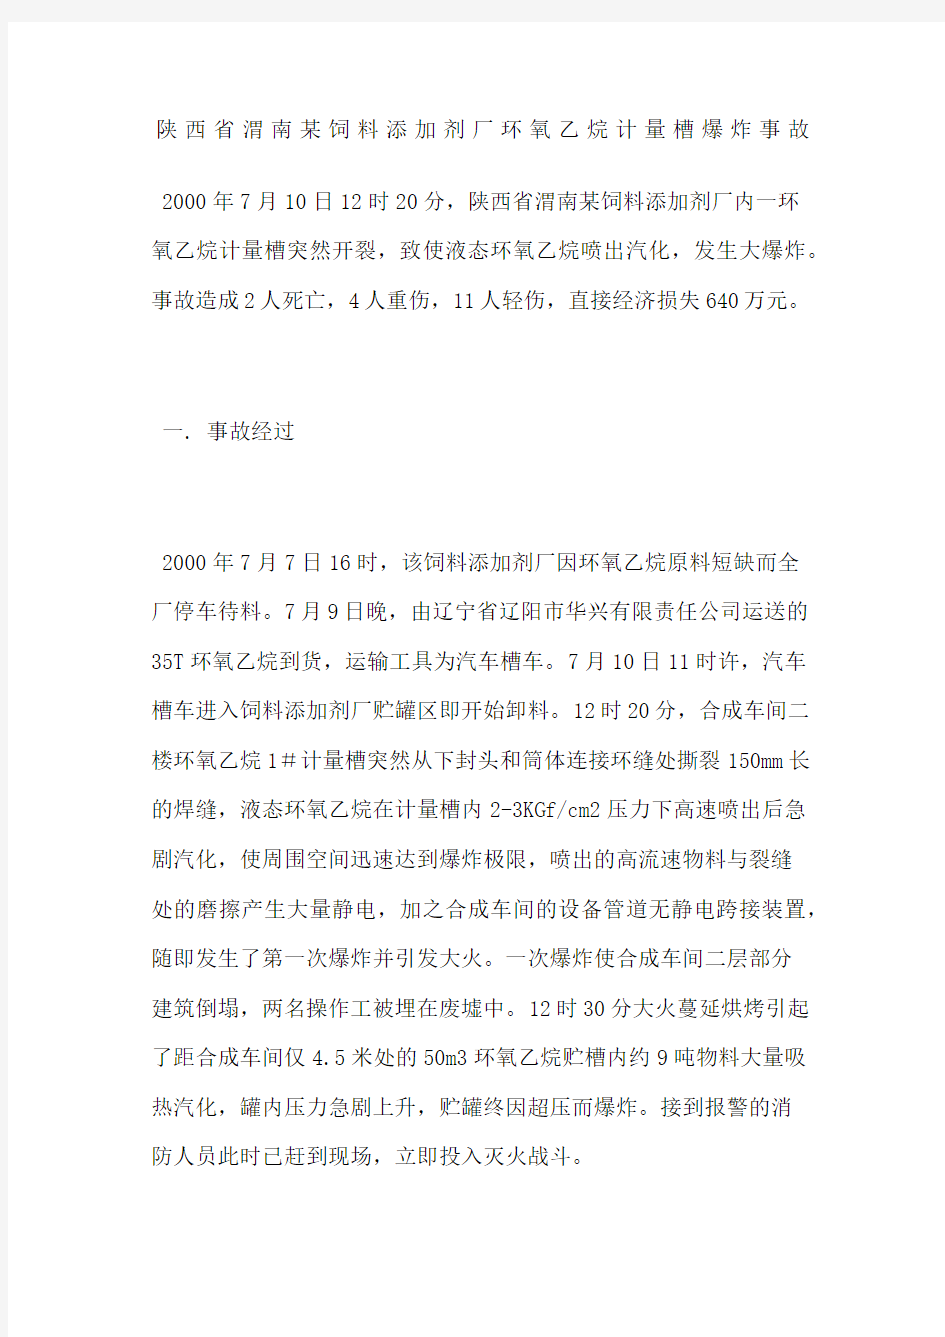 陕西省渭南饲料添加剂厂环氧乙烷计量槽爆炸事故